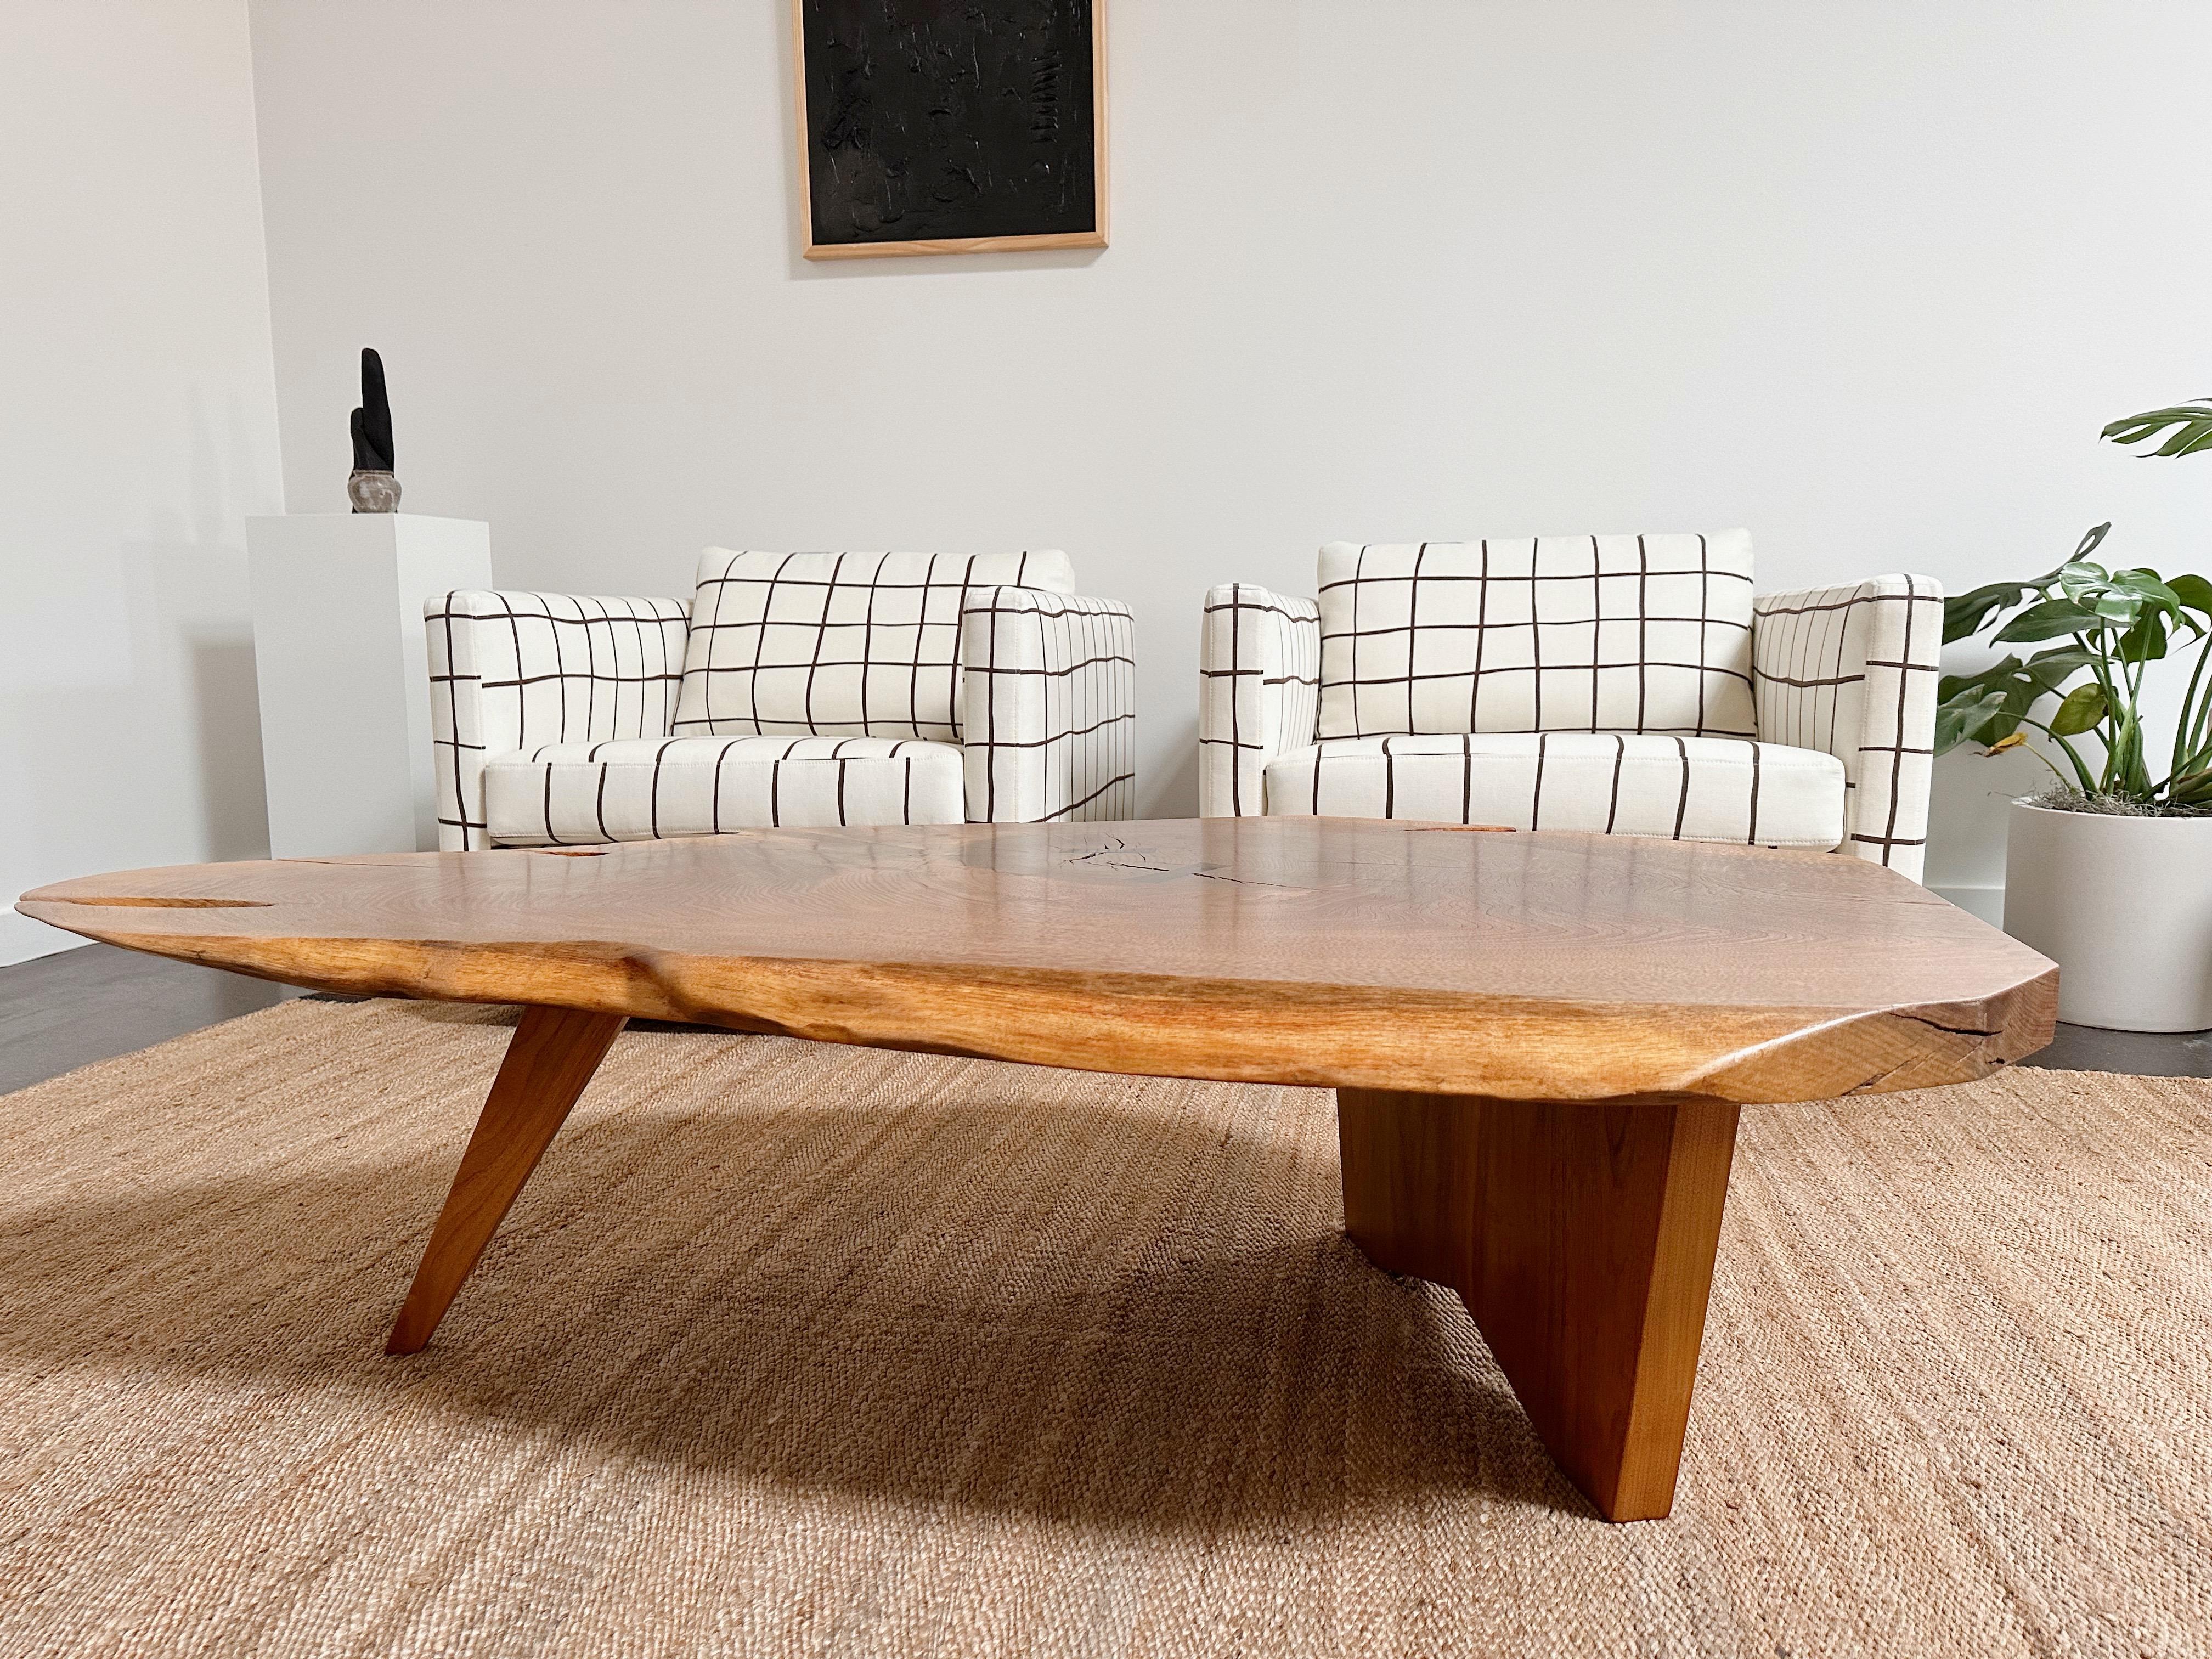 Une table basse américaine à une seule dalle avec de grands détails de nœuds, un grain expressif, des bords libres et coupés et un papillon en noyer.